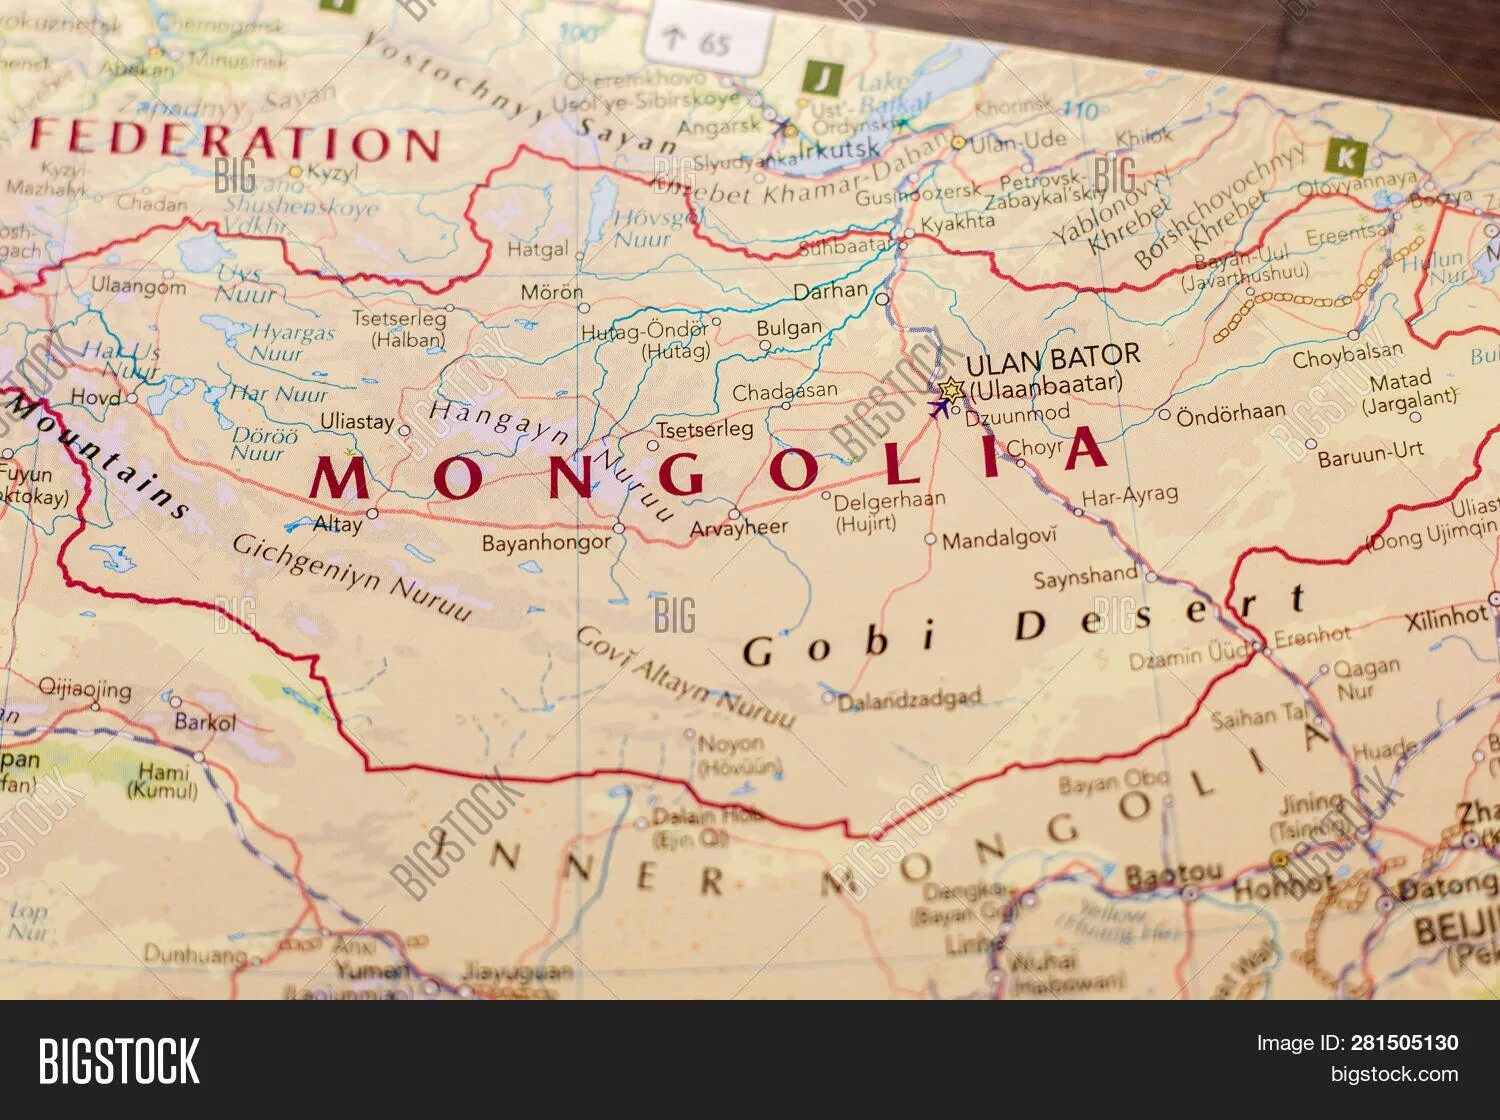 Самая протяженная граница россии с монголией